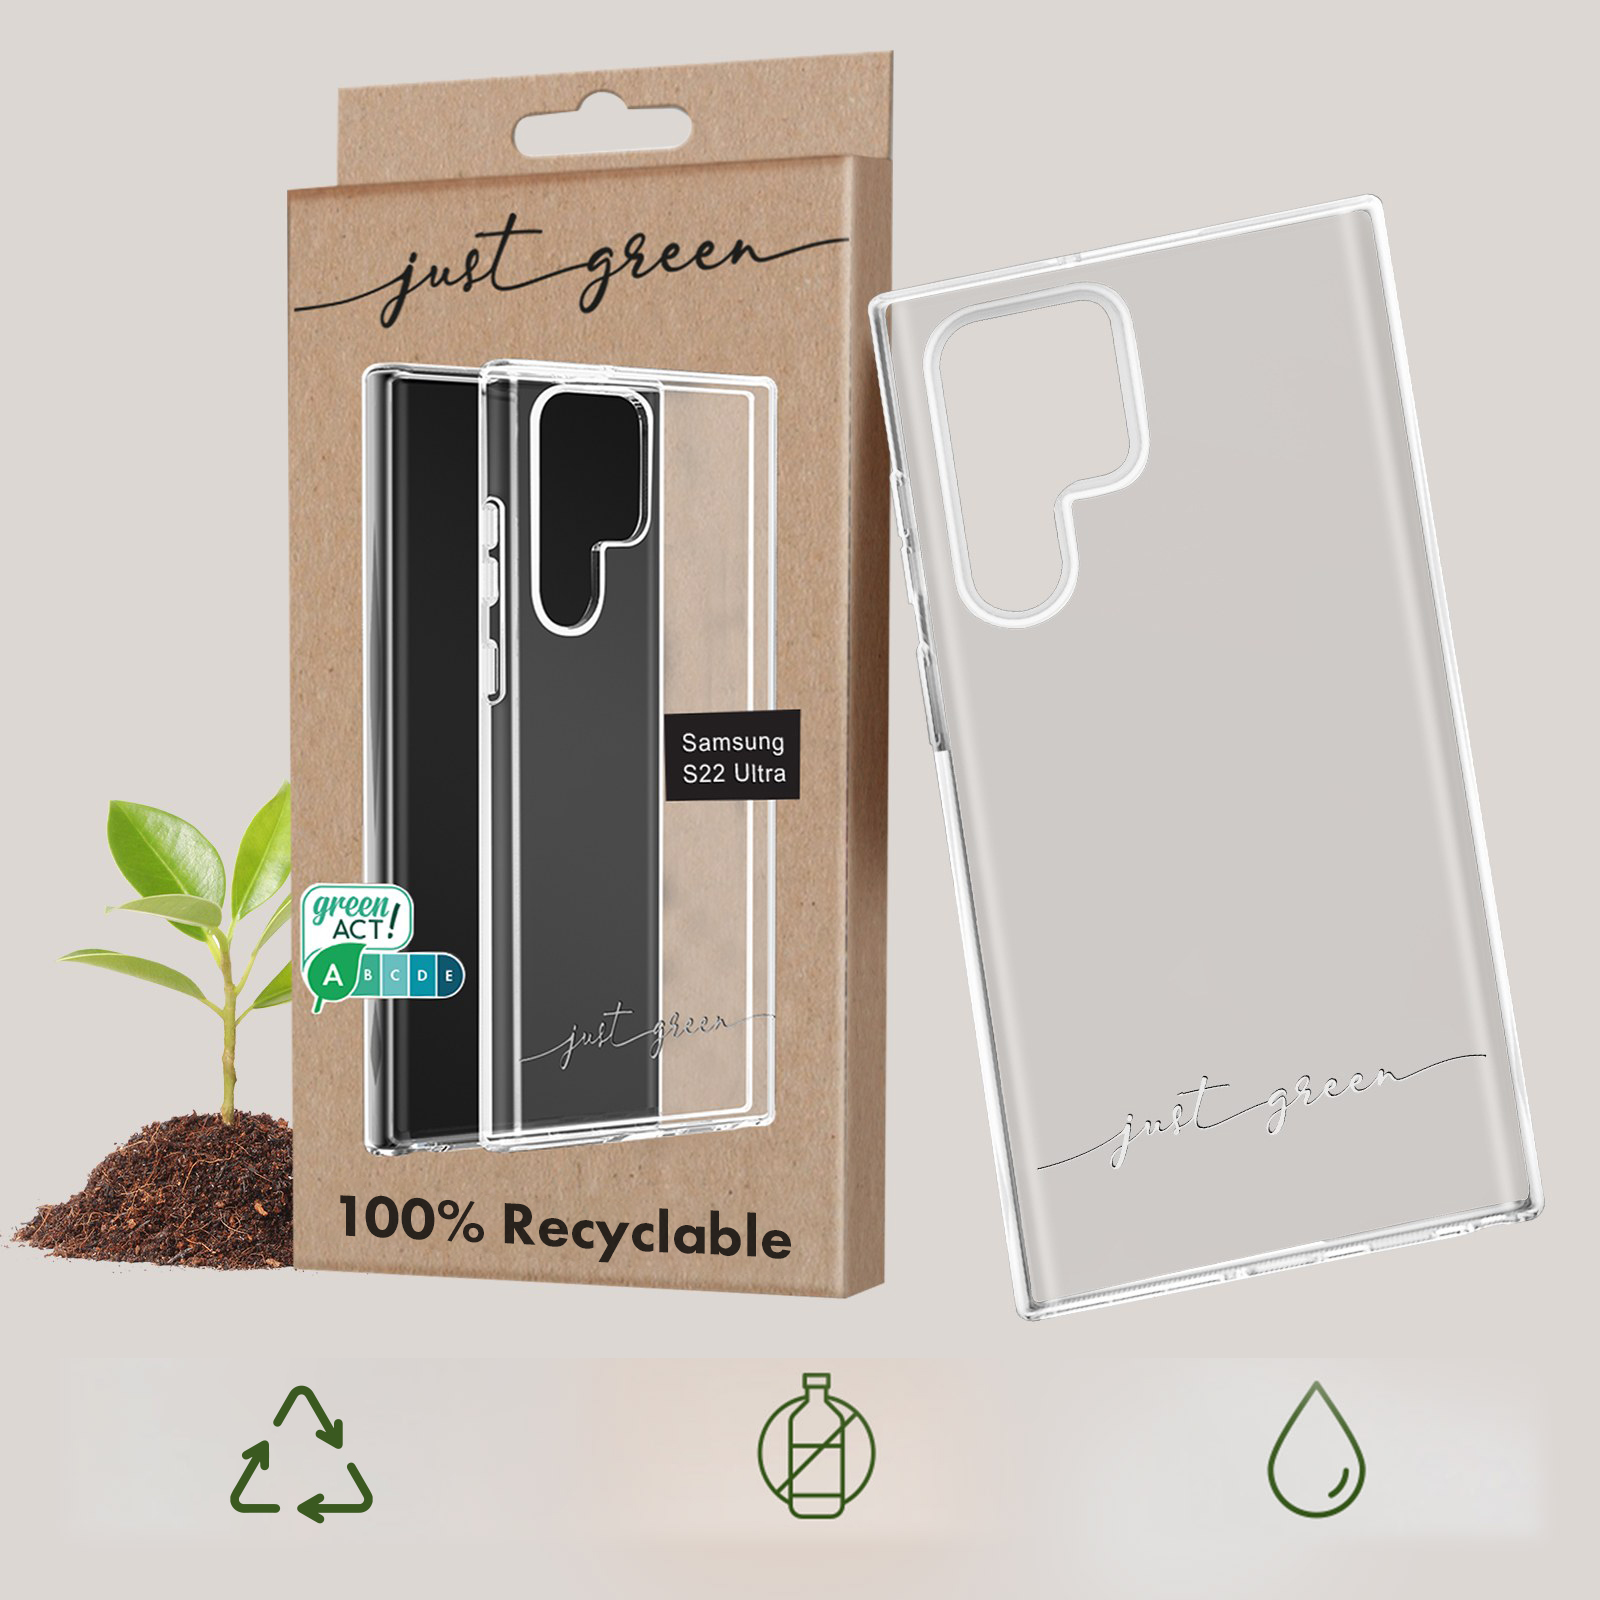 JUST GREEN 100% biologisch abbaubare Ultra, S22 Galaxy Backcover, Series, Samsung, Handyhülle Transparent